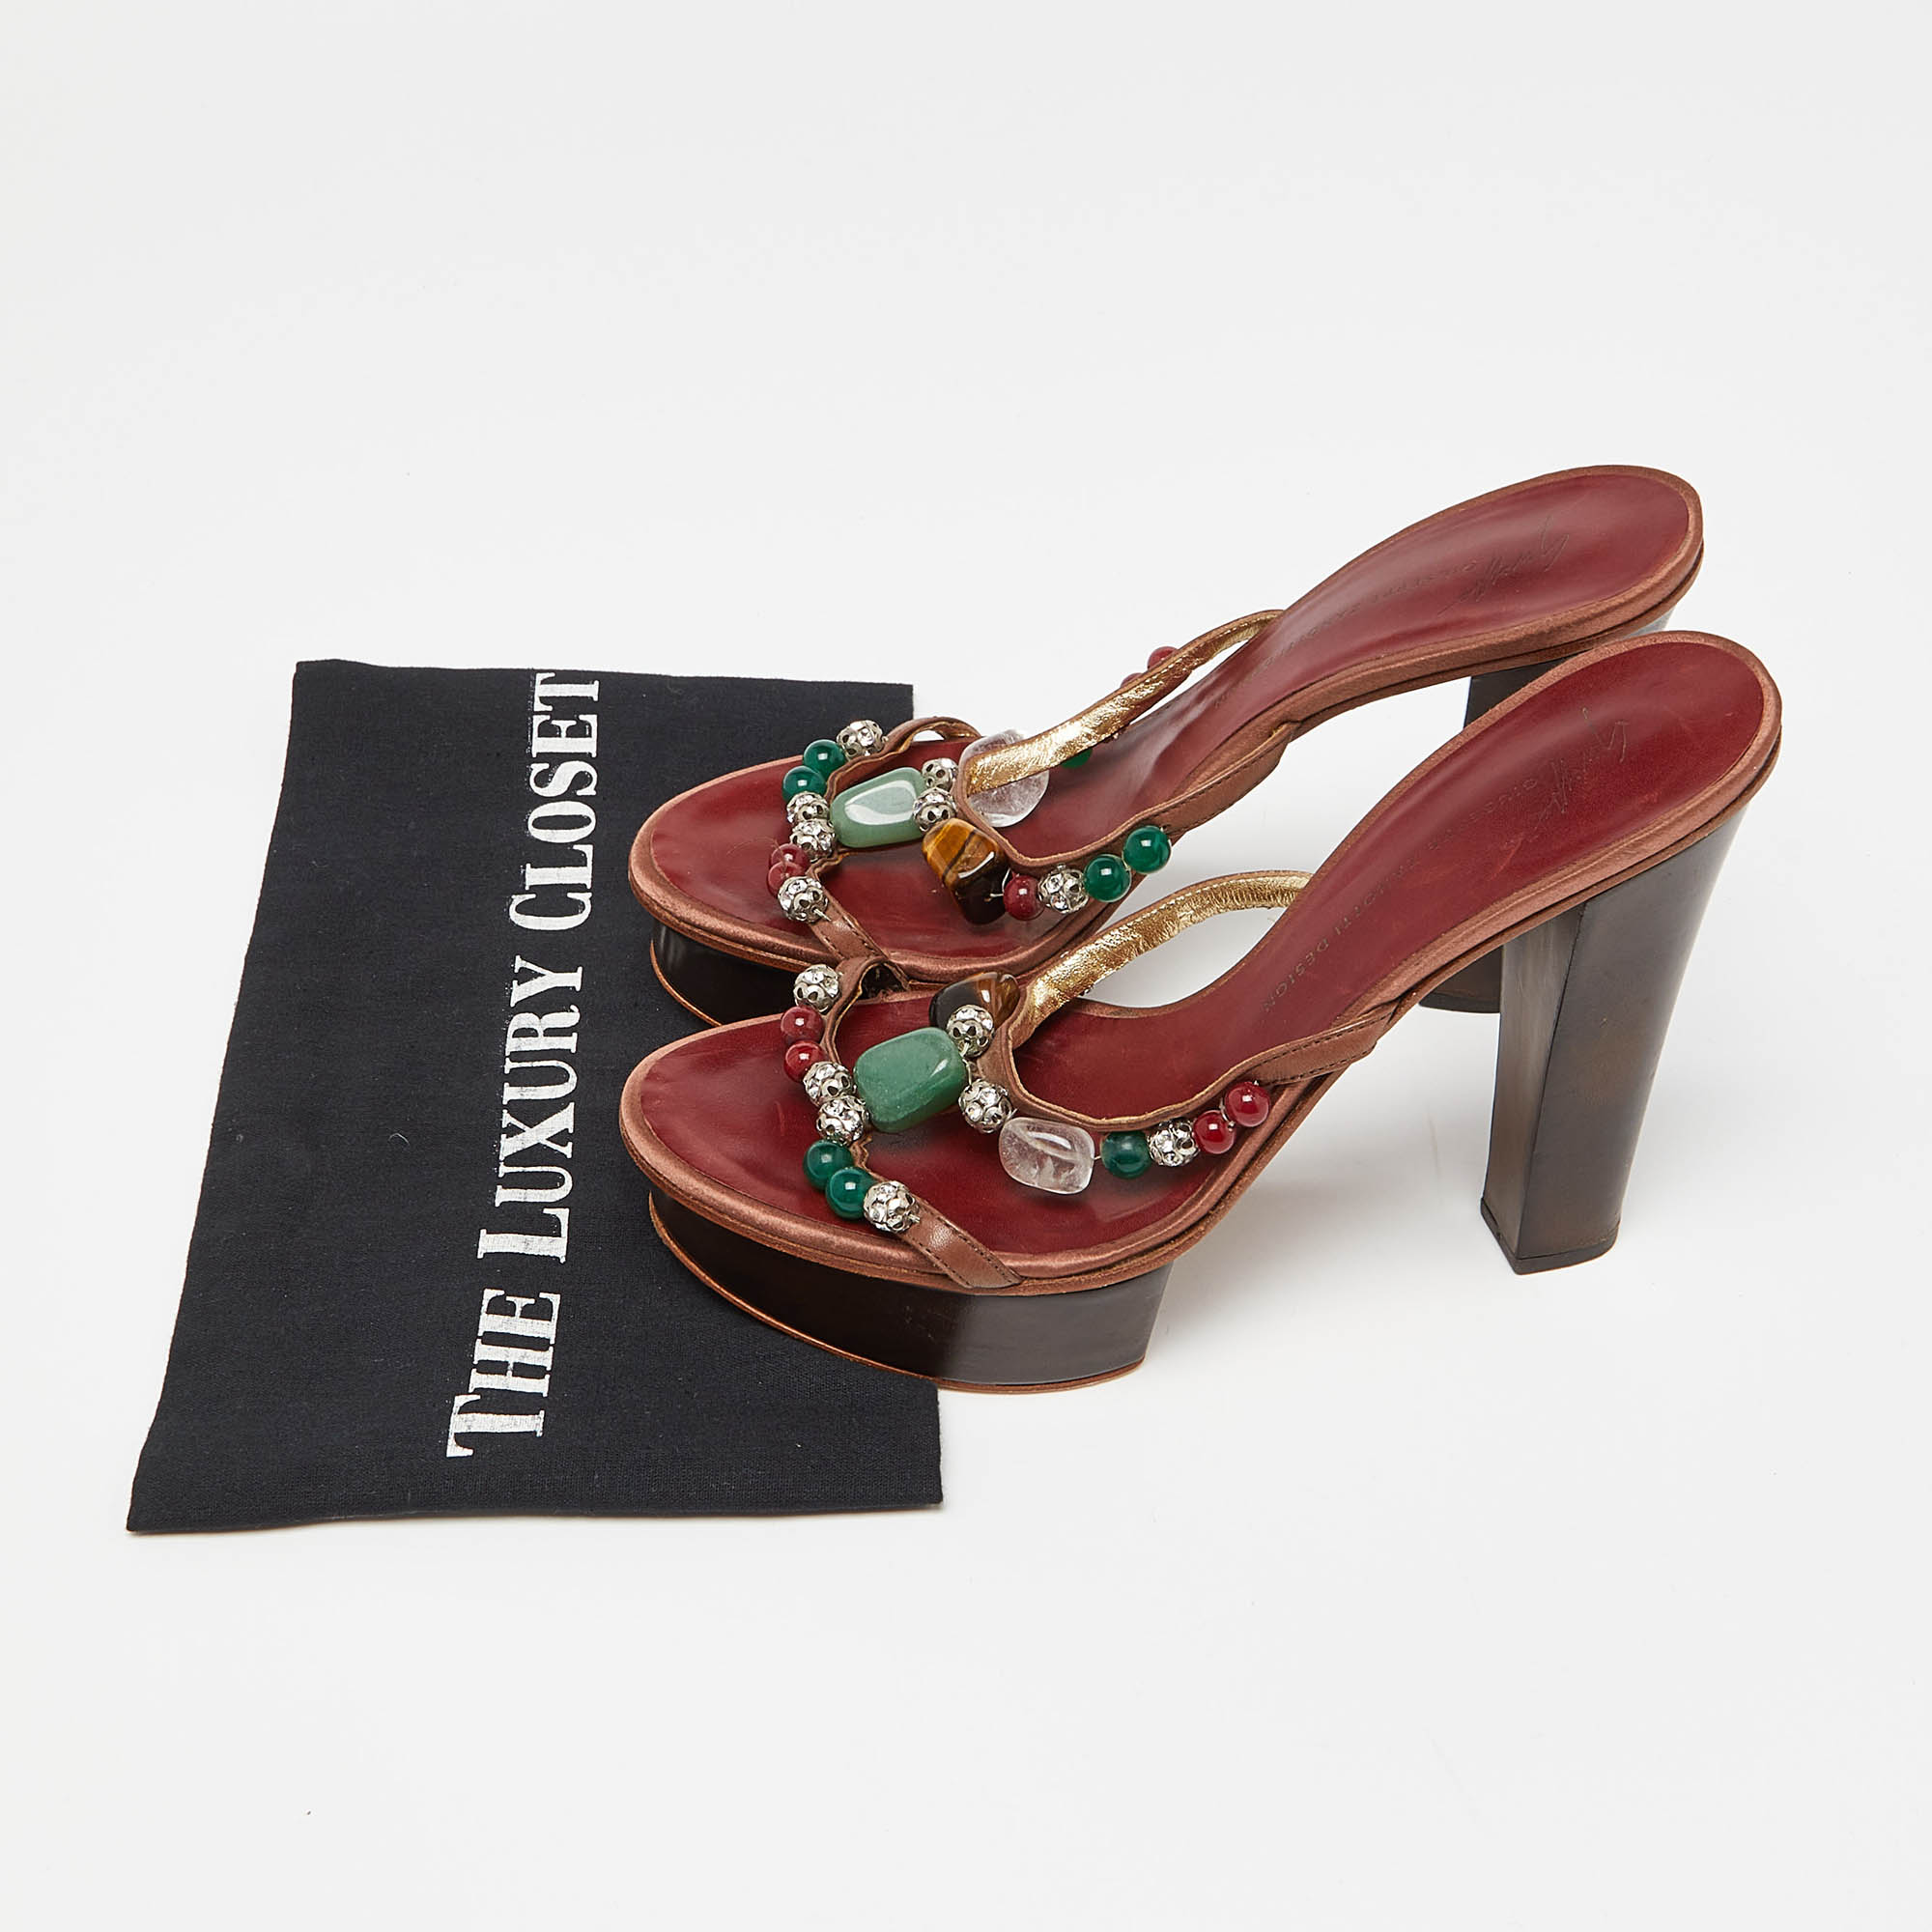 Guiseppe Zanotti Brown Leather Crystal Embellished Platform Slide Sandals Size 38